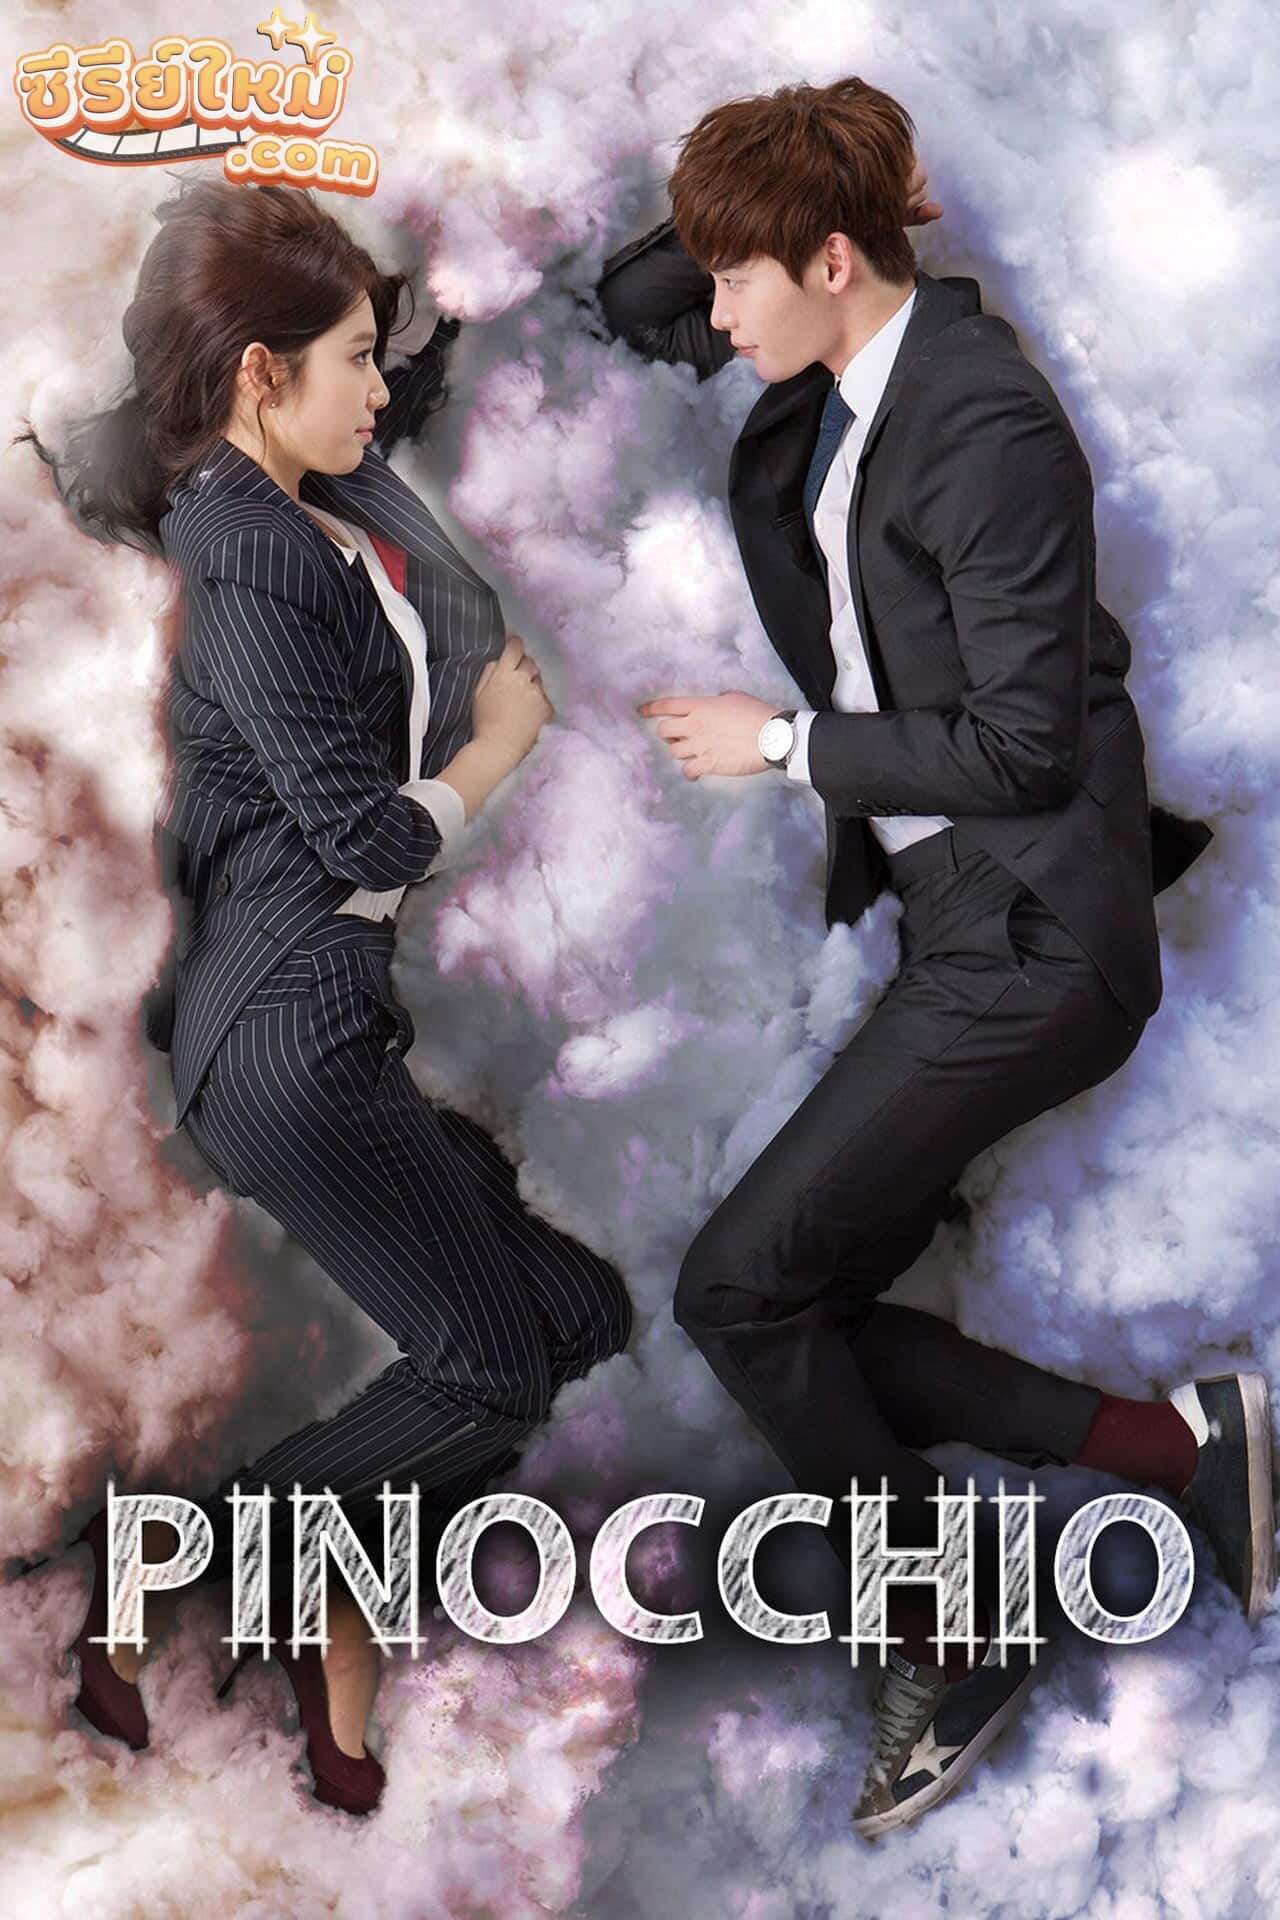 Pinocchio พิน็อกคิโอ รักนี้หัวใจไม่โกหก (2014)